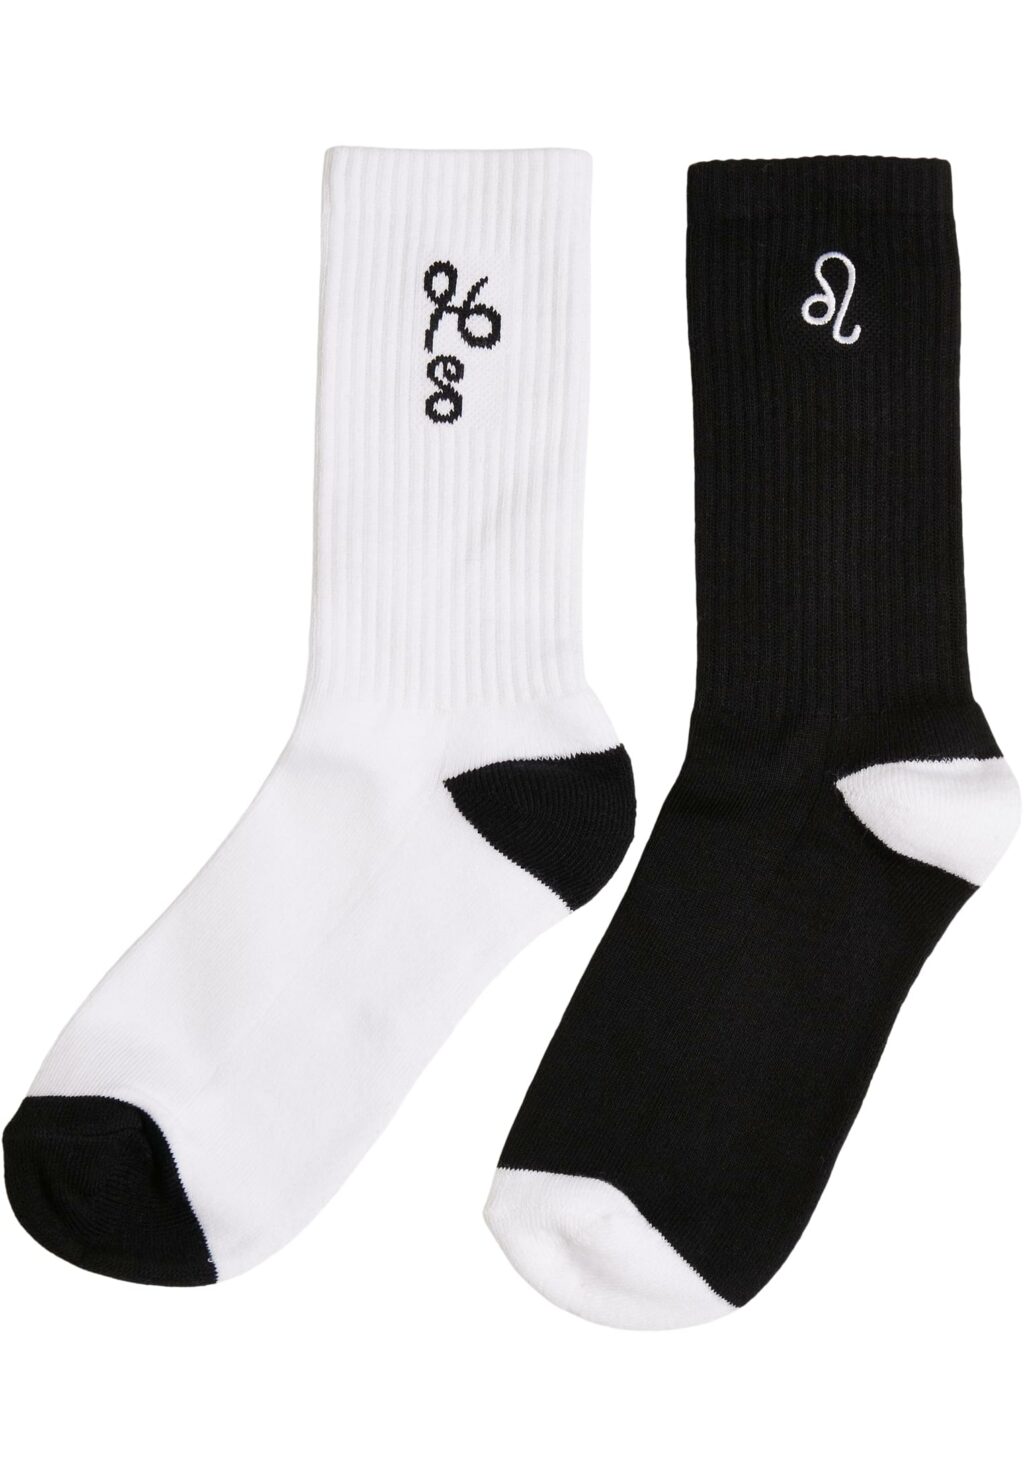 Zodiac Socks 2-Pack black/white leo MT2235